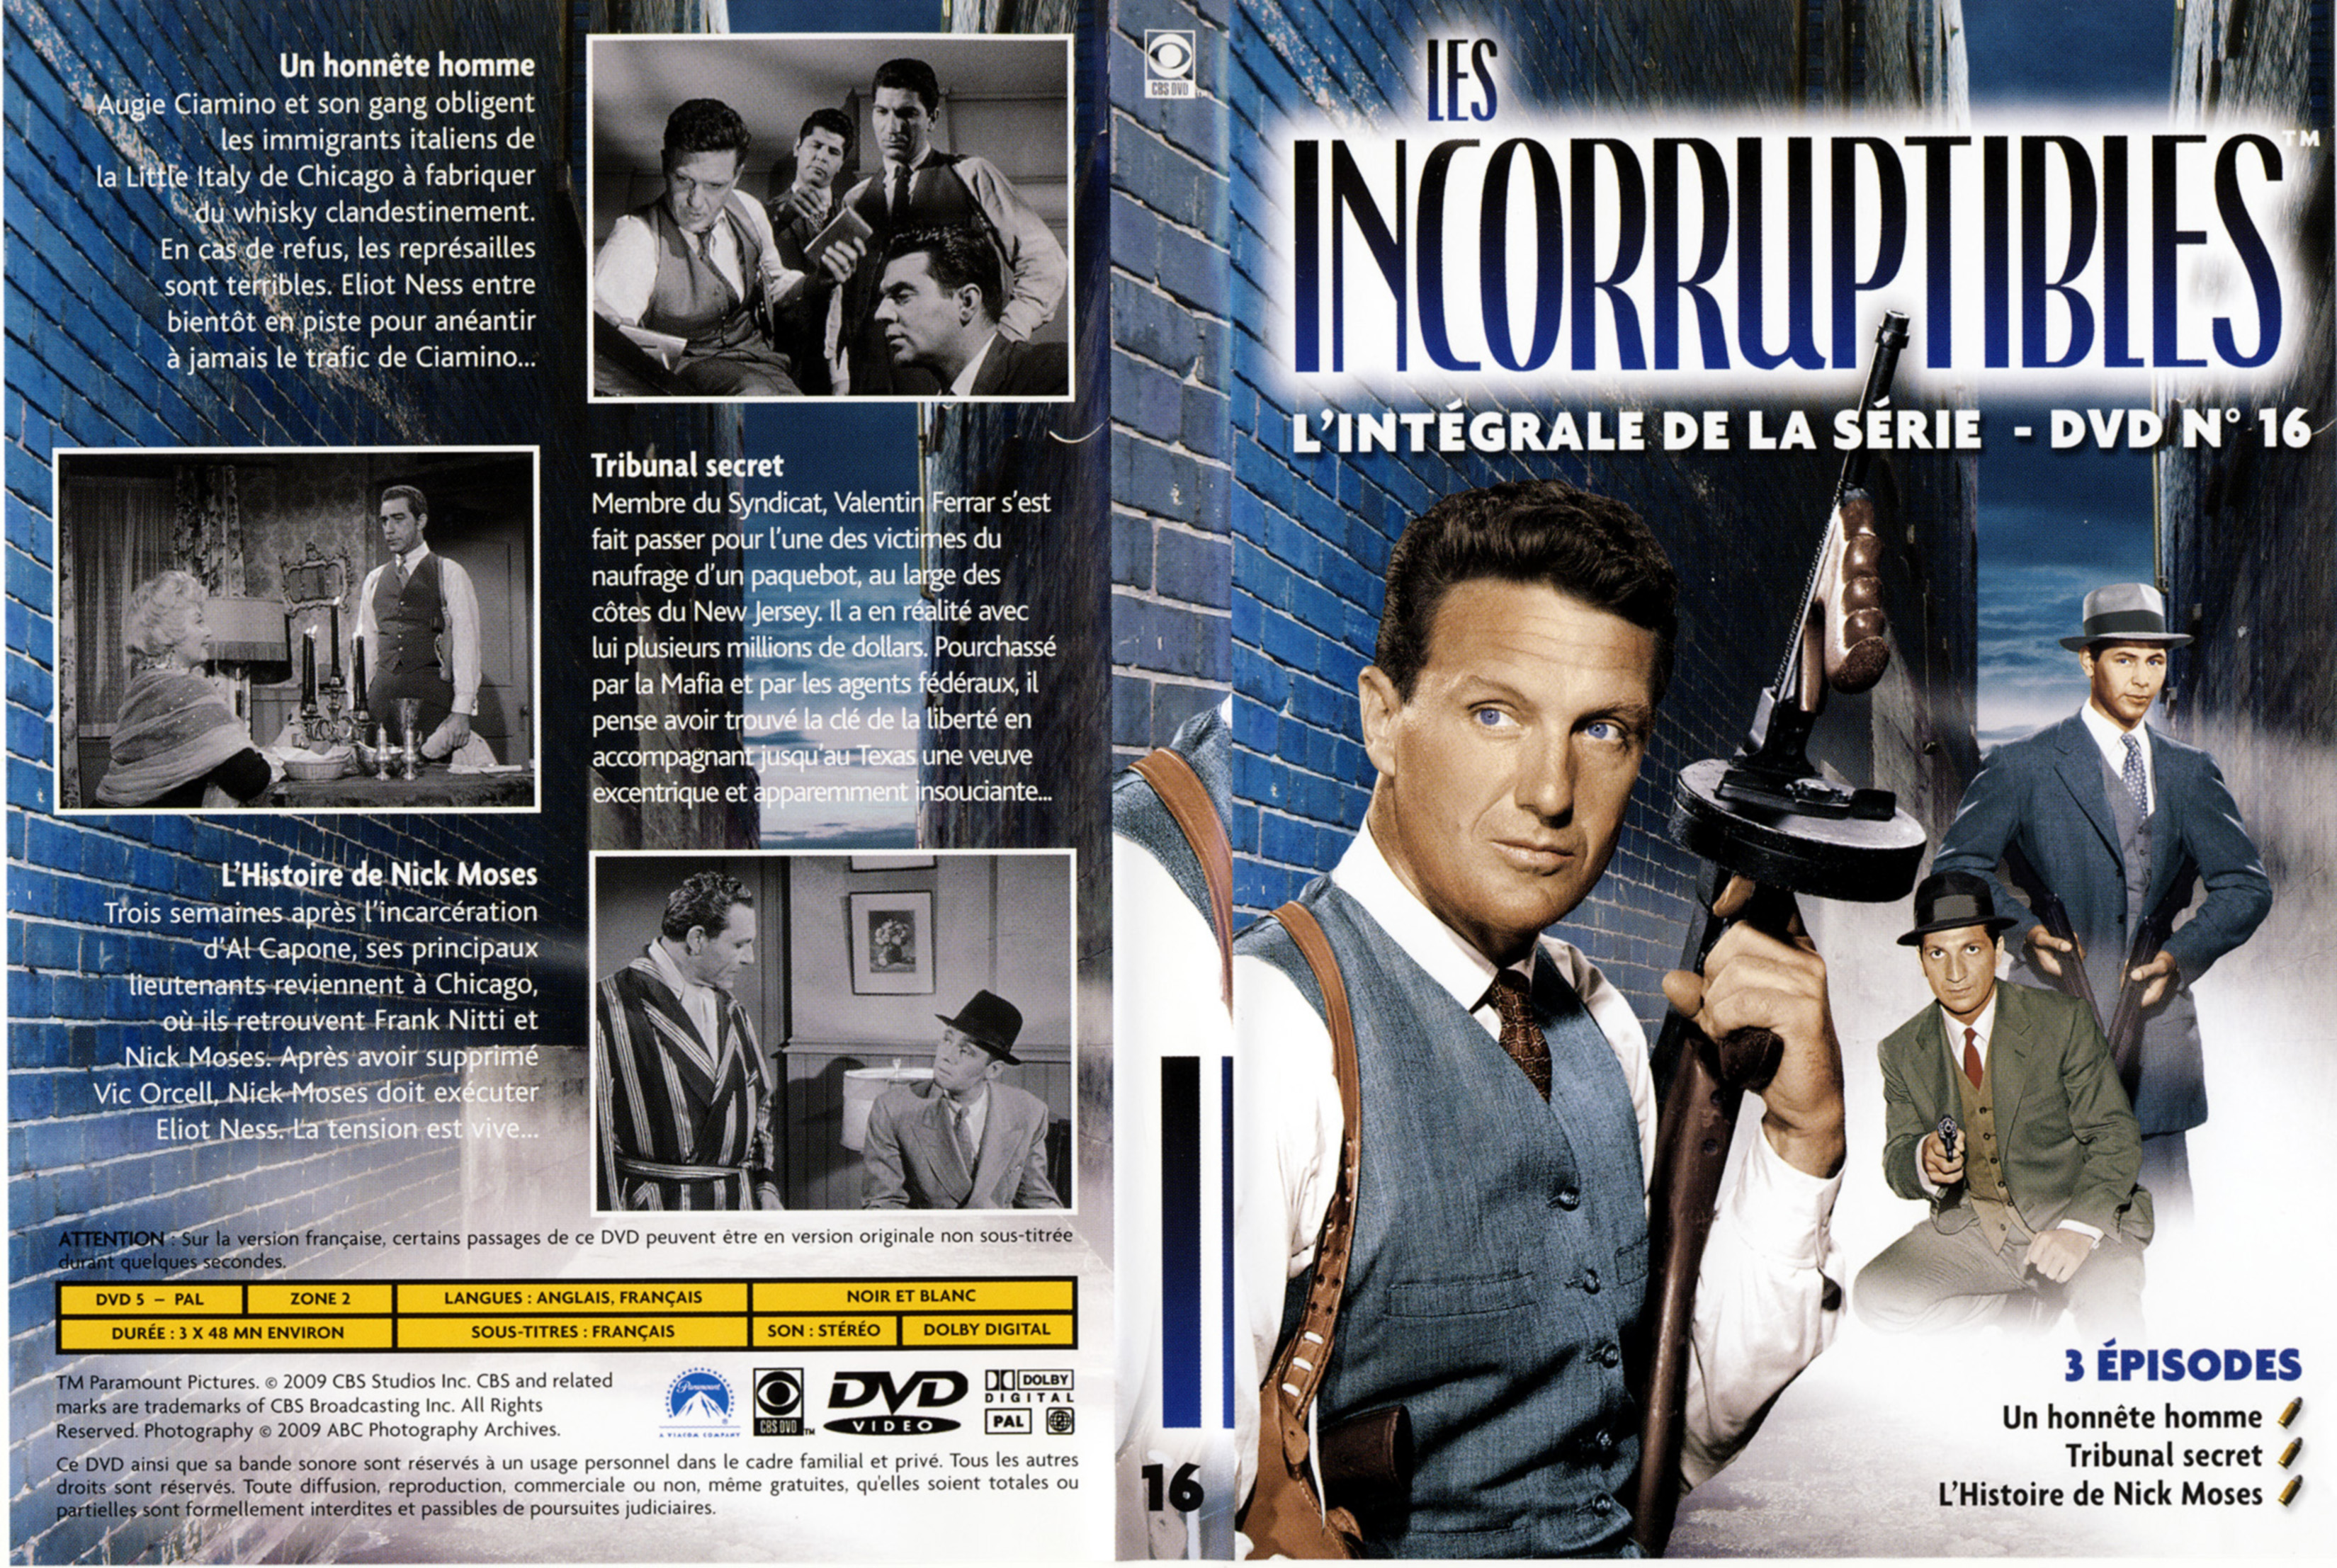 Jaquette DVD Les incorruptibles intgrale DVD 16